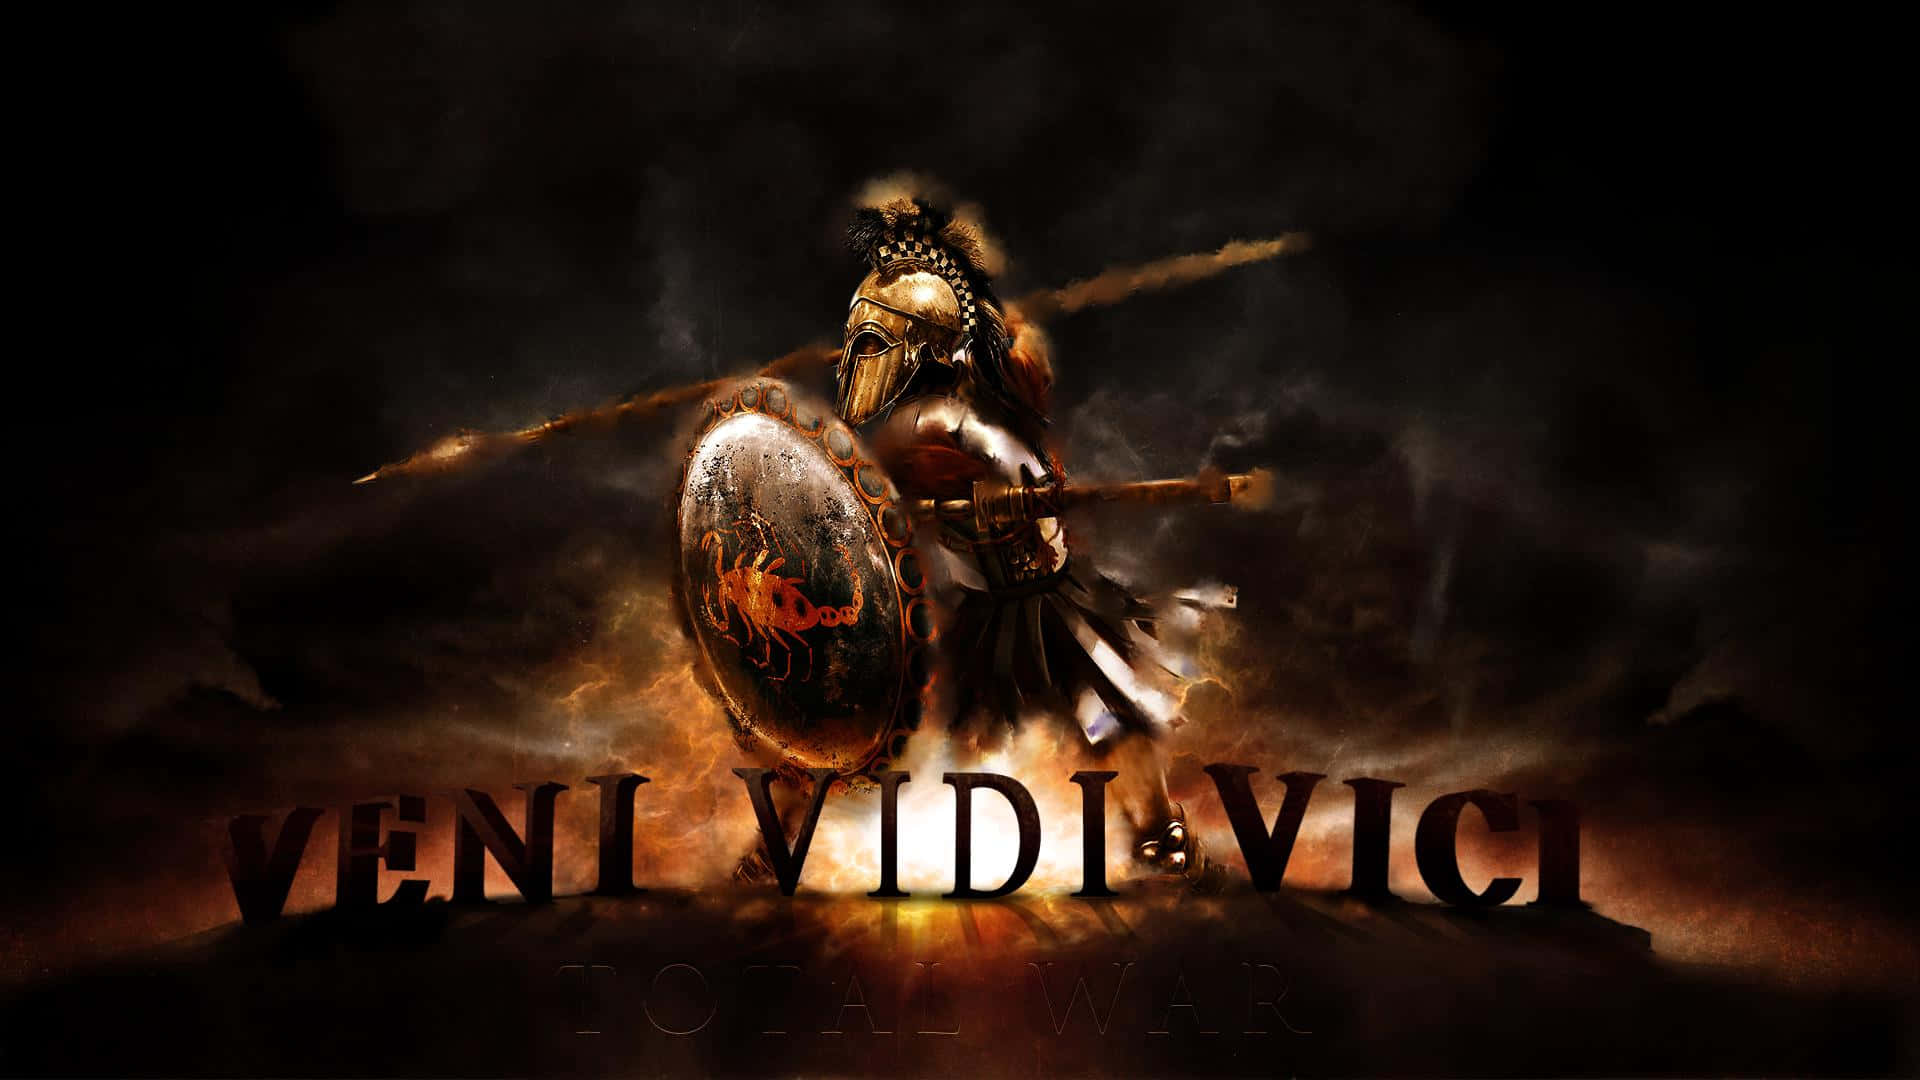 Bester Hintergrund Für Total War Rome 2 1920 X 1080